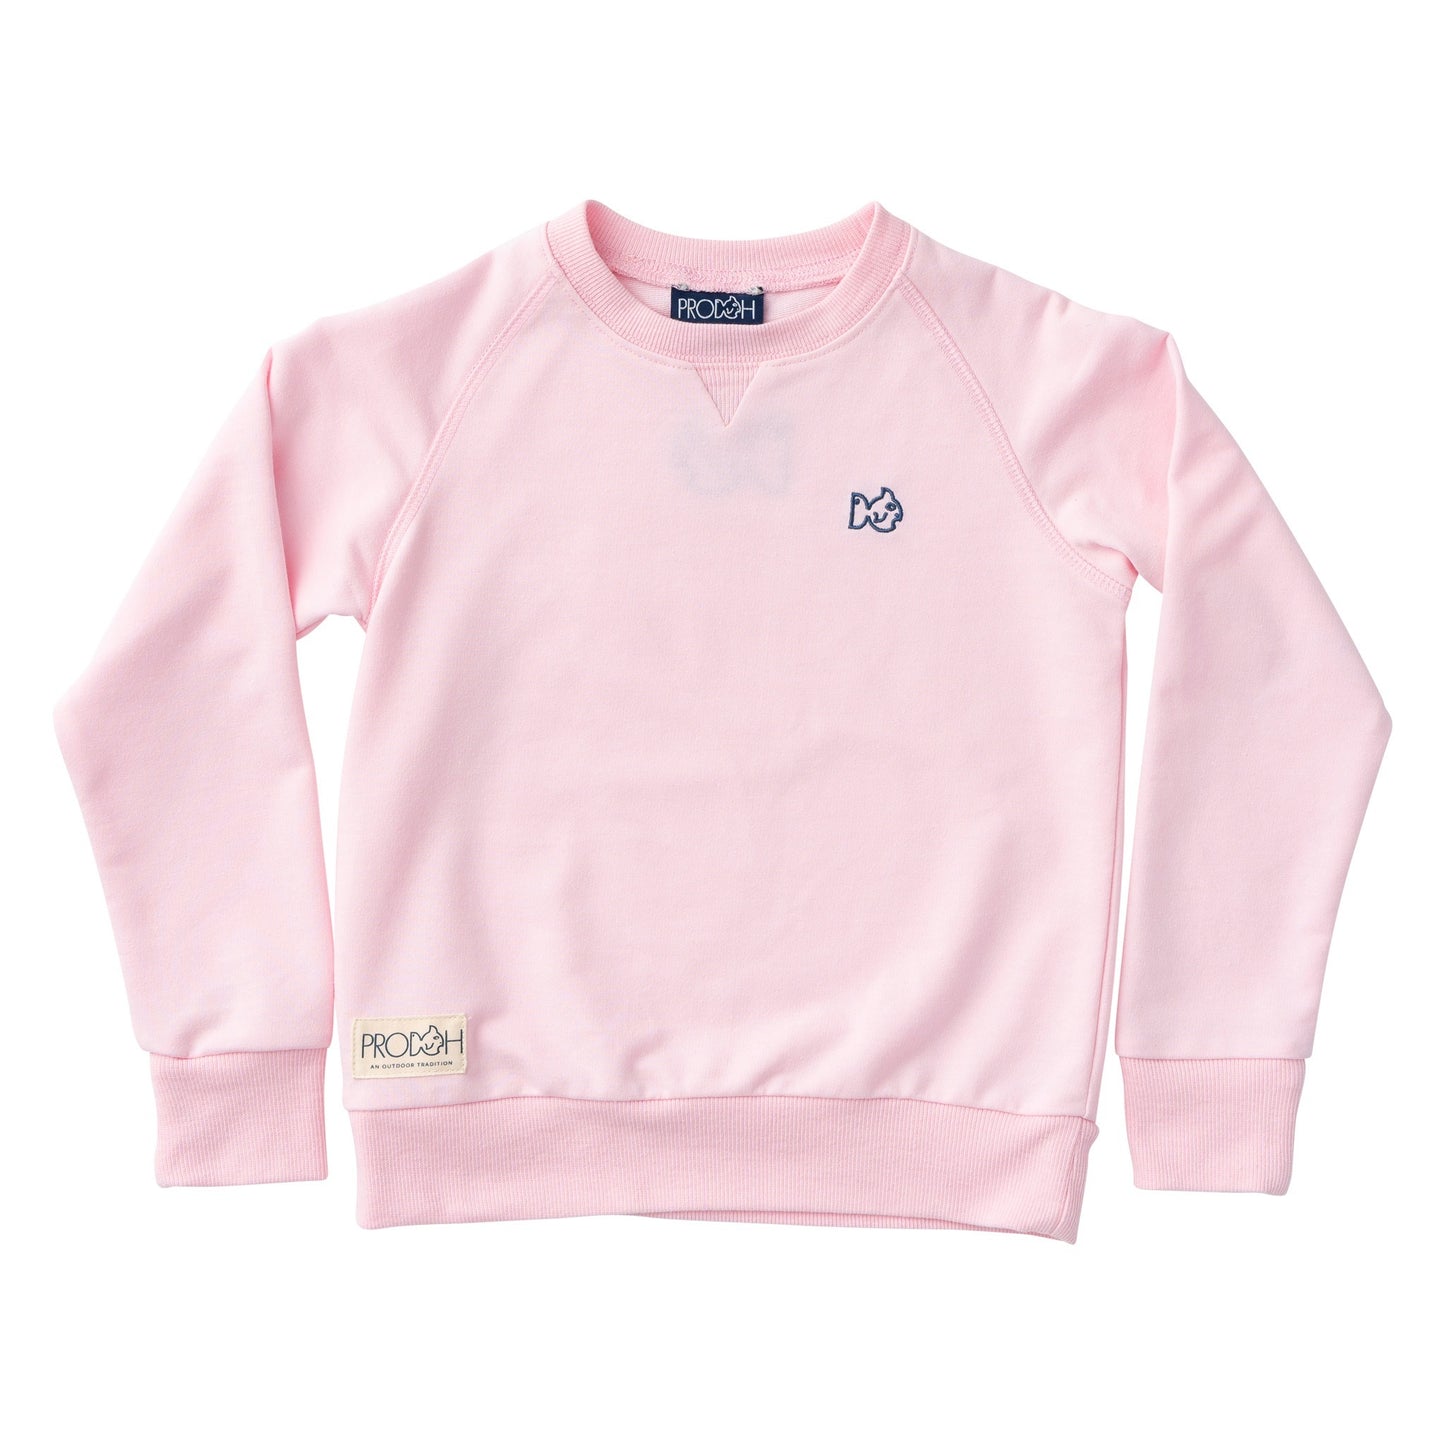 Crew Control Sweatshirt - Pink